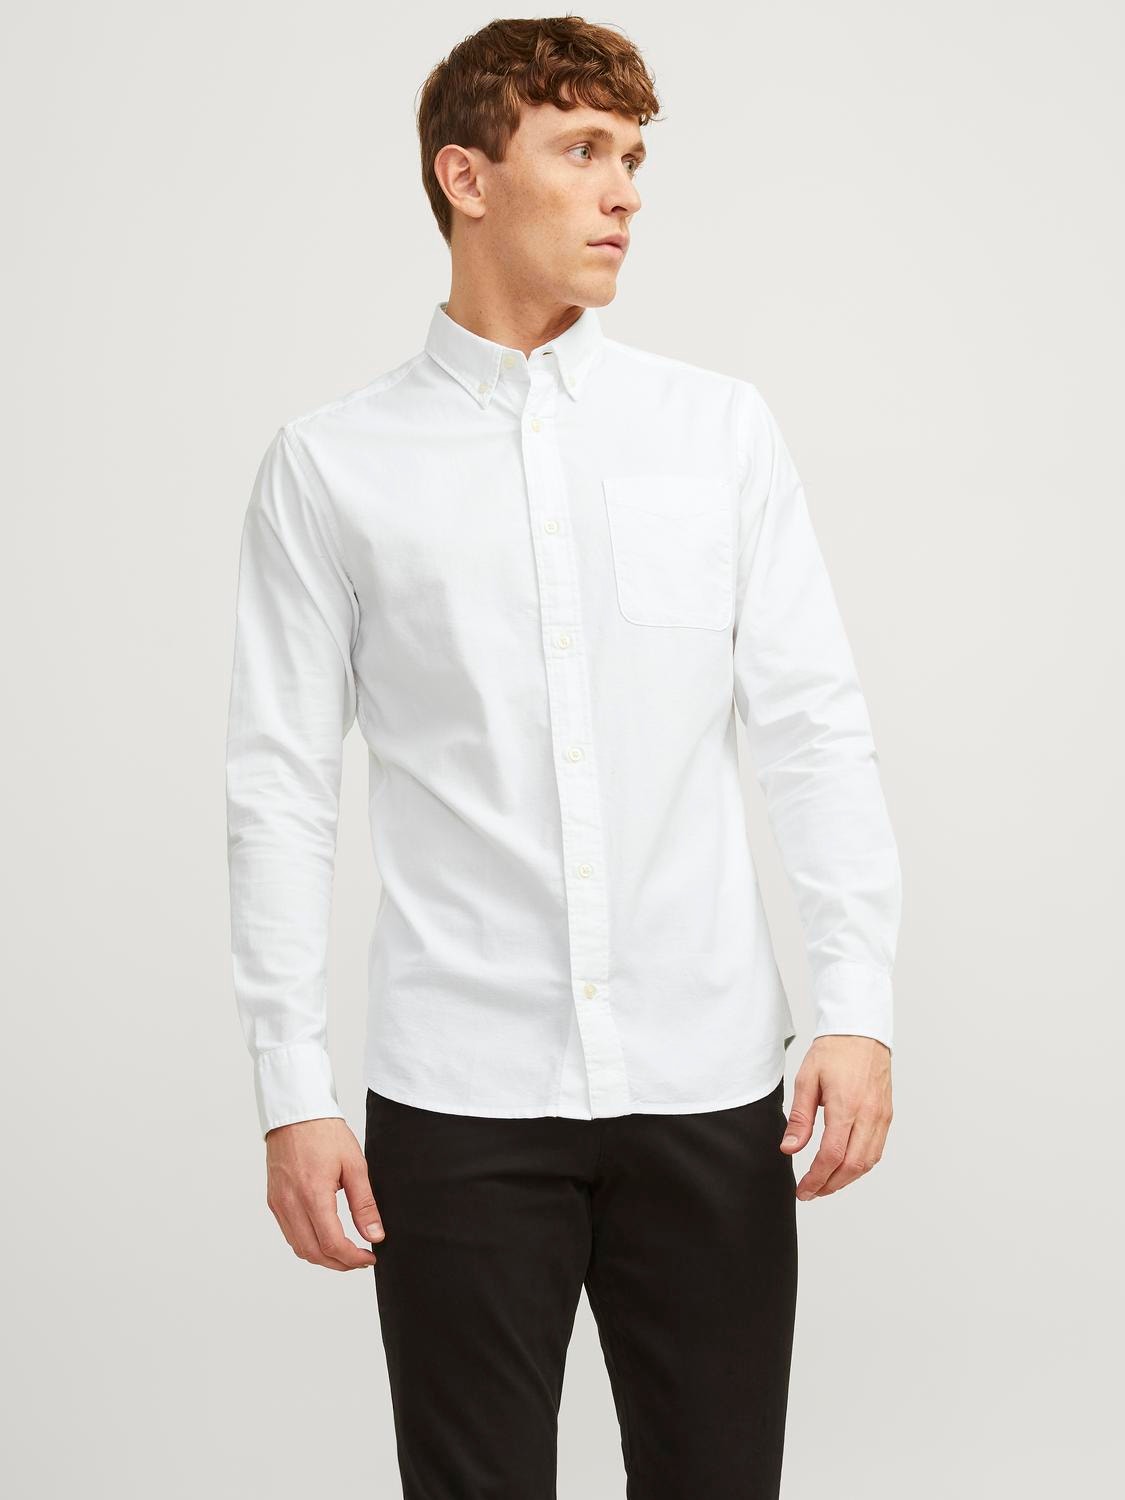 Jack & Jones Slim Fit Oficialūs marškiniai -White - 12192150